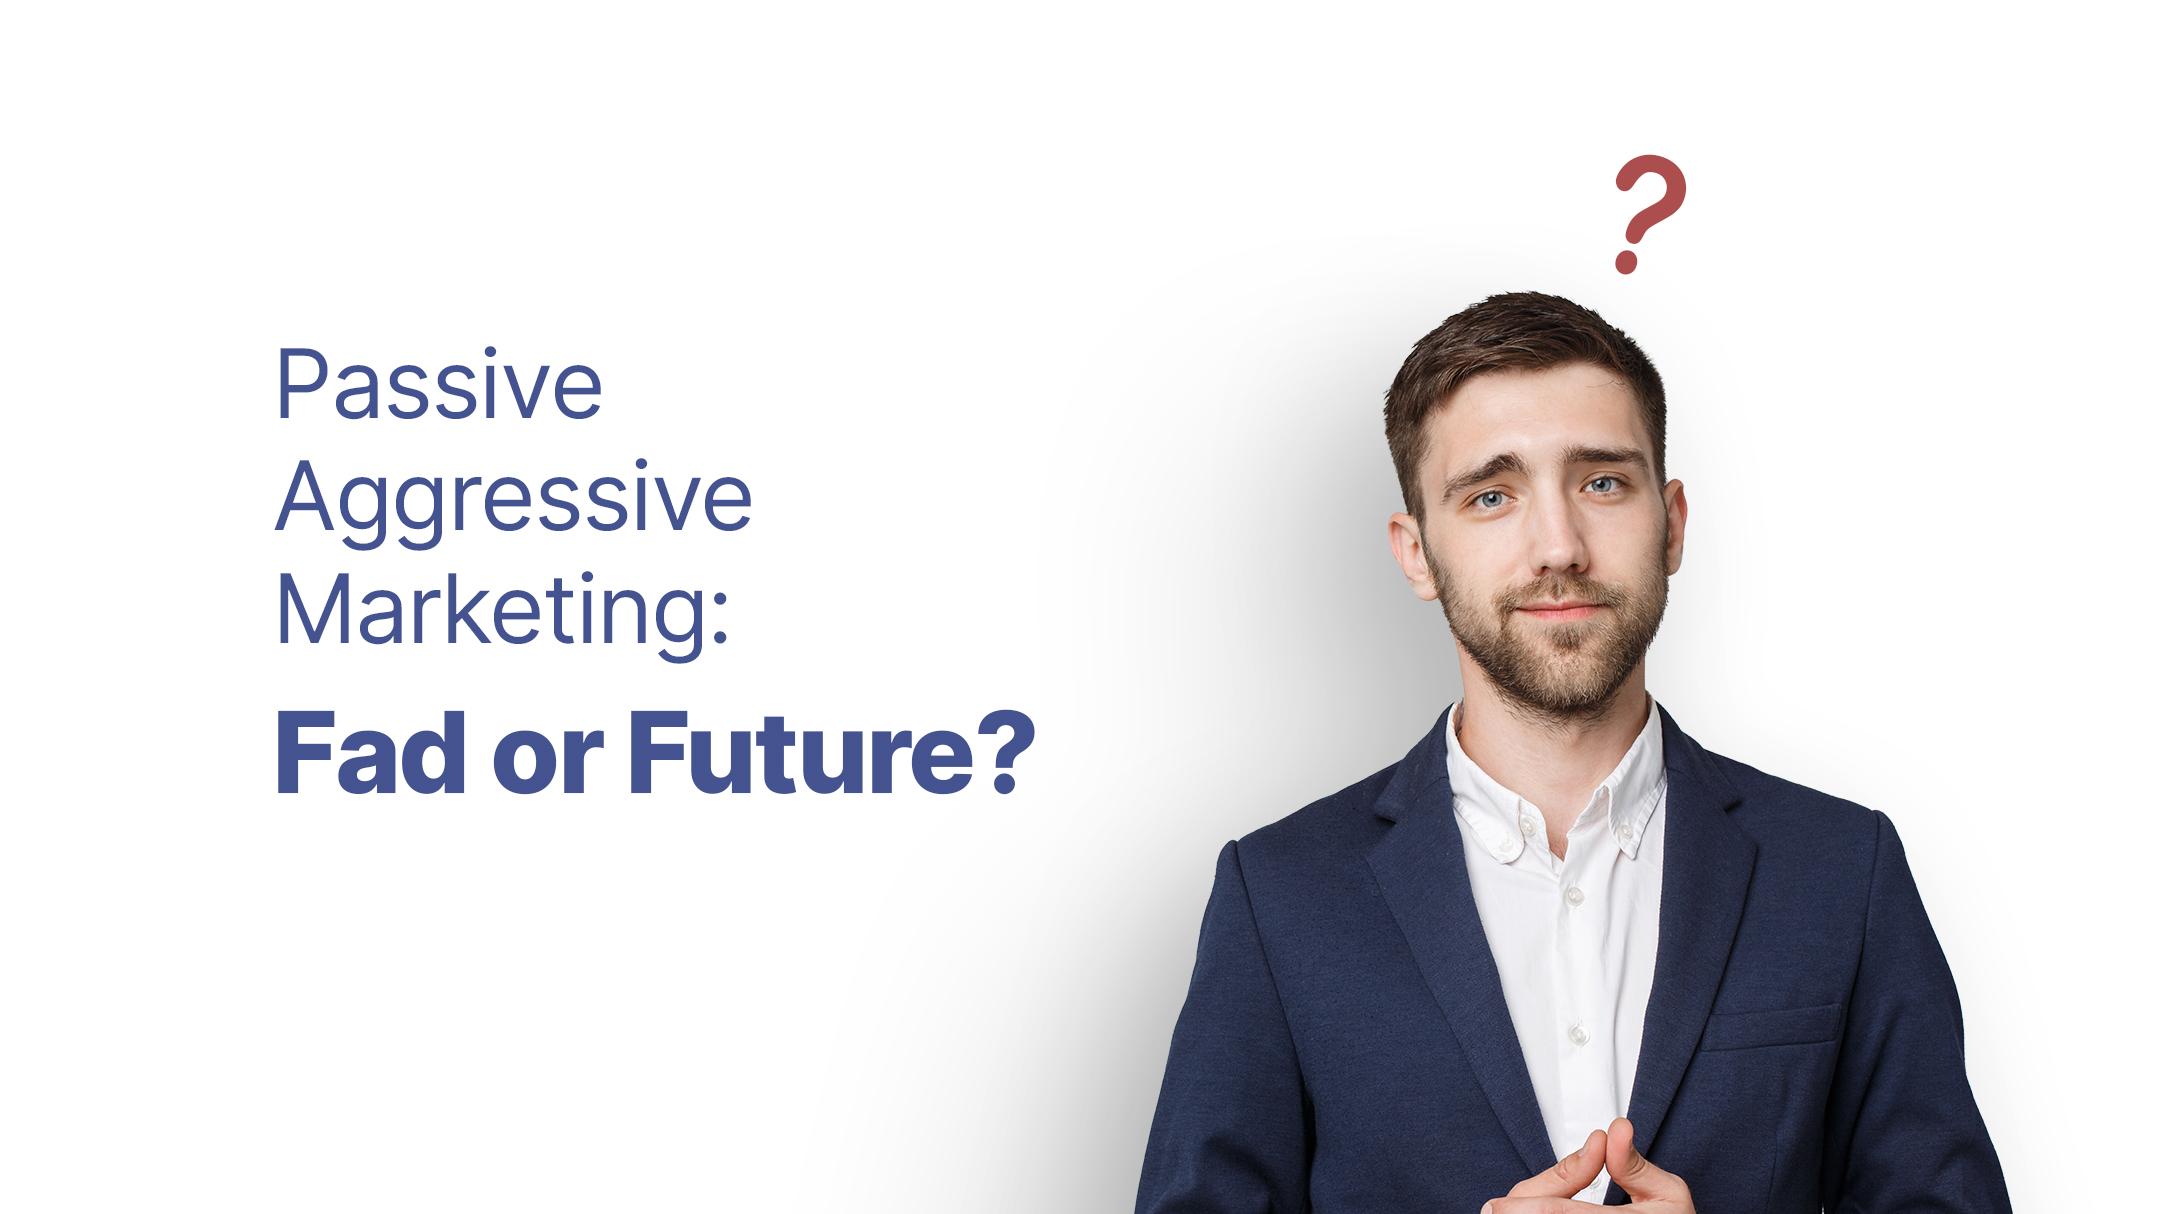 Passive Aggressive Marketing Messages: Fad or Future?